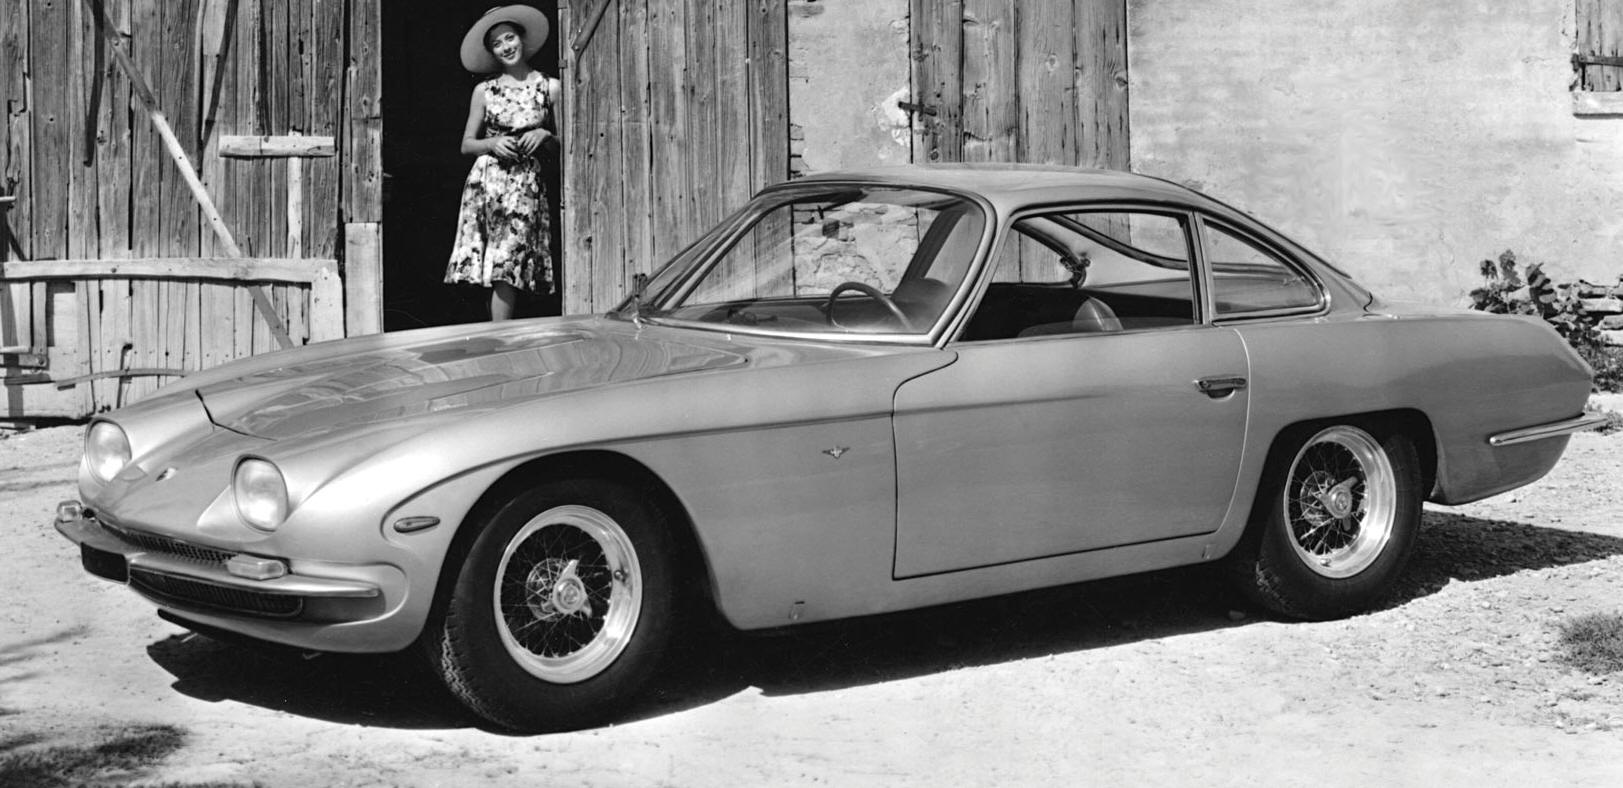 History of Lamborghini: 1963-1964